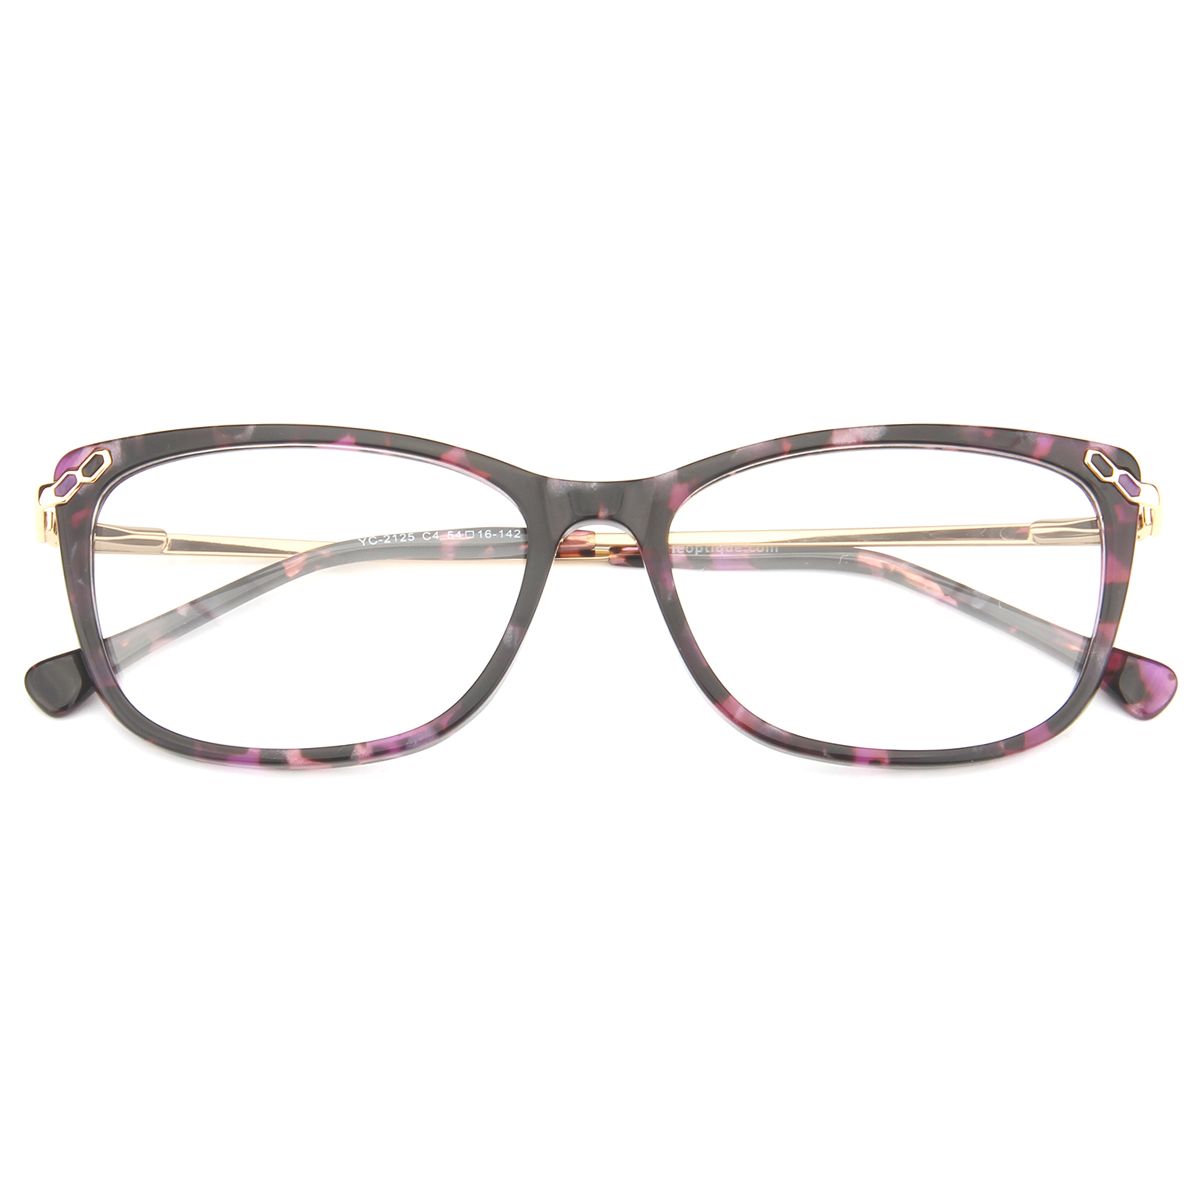 Yc 2125 Rectangle Floral Eyeglasses Frames Leoptique